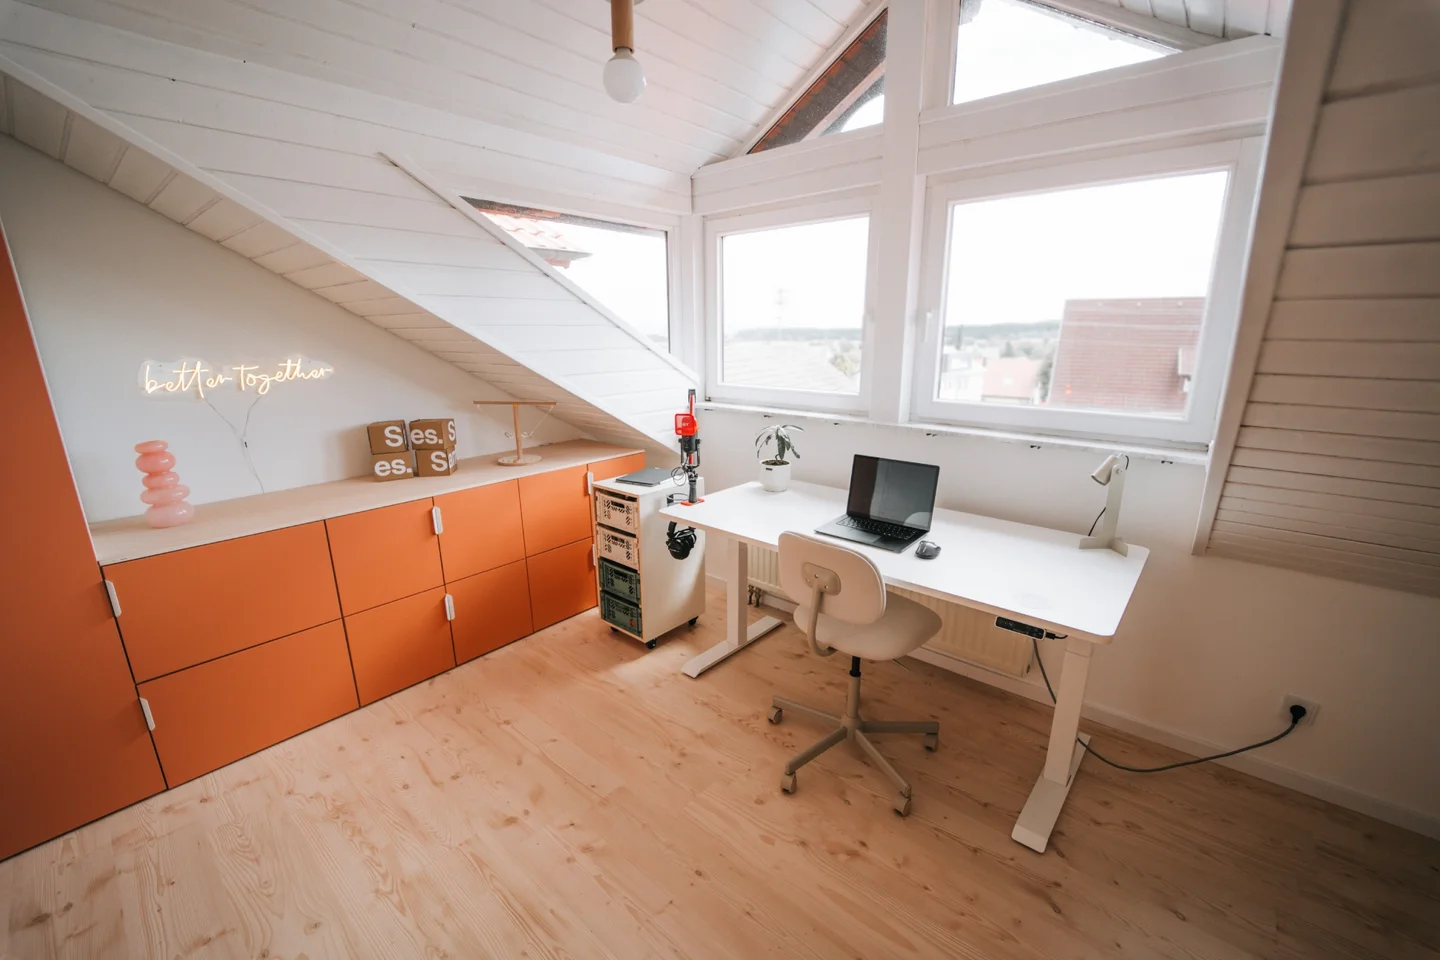 Dachgeschosszimmer mit Fenster, das als Home Office genutzt wird. Ausgestattet mit orangener Schrankwand und weißem Schreibtisch.